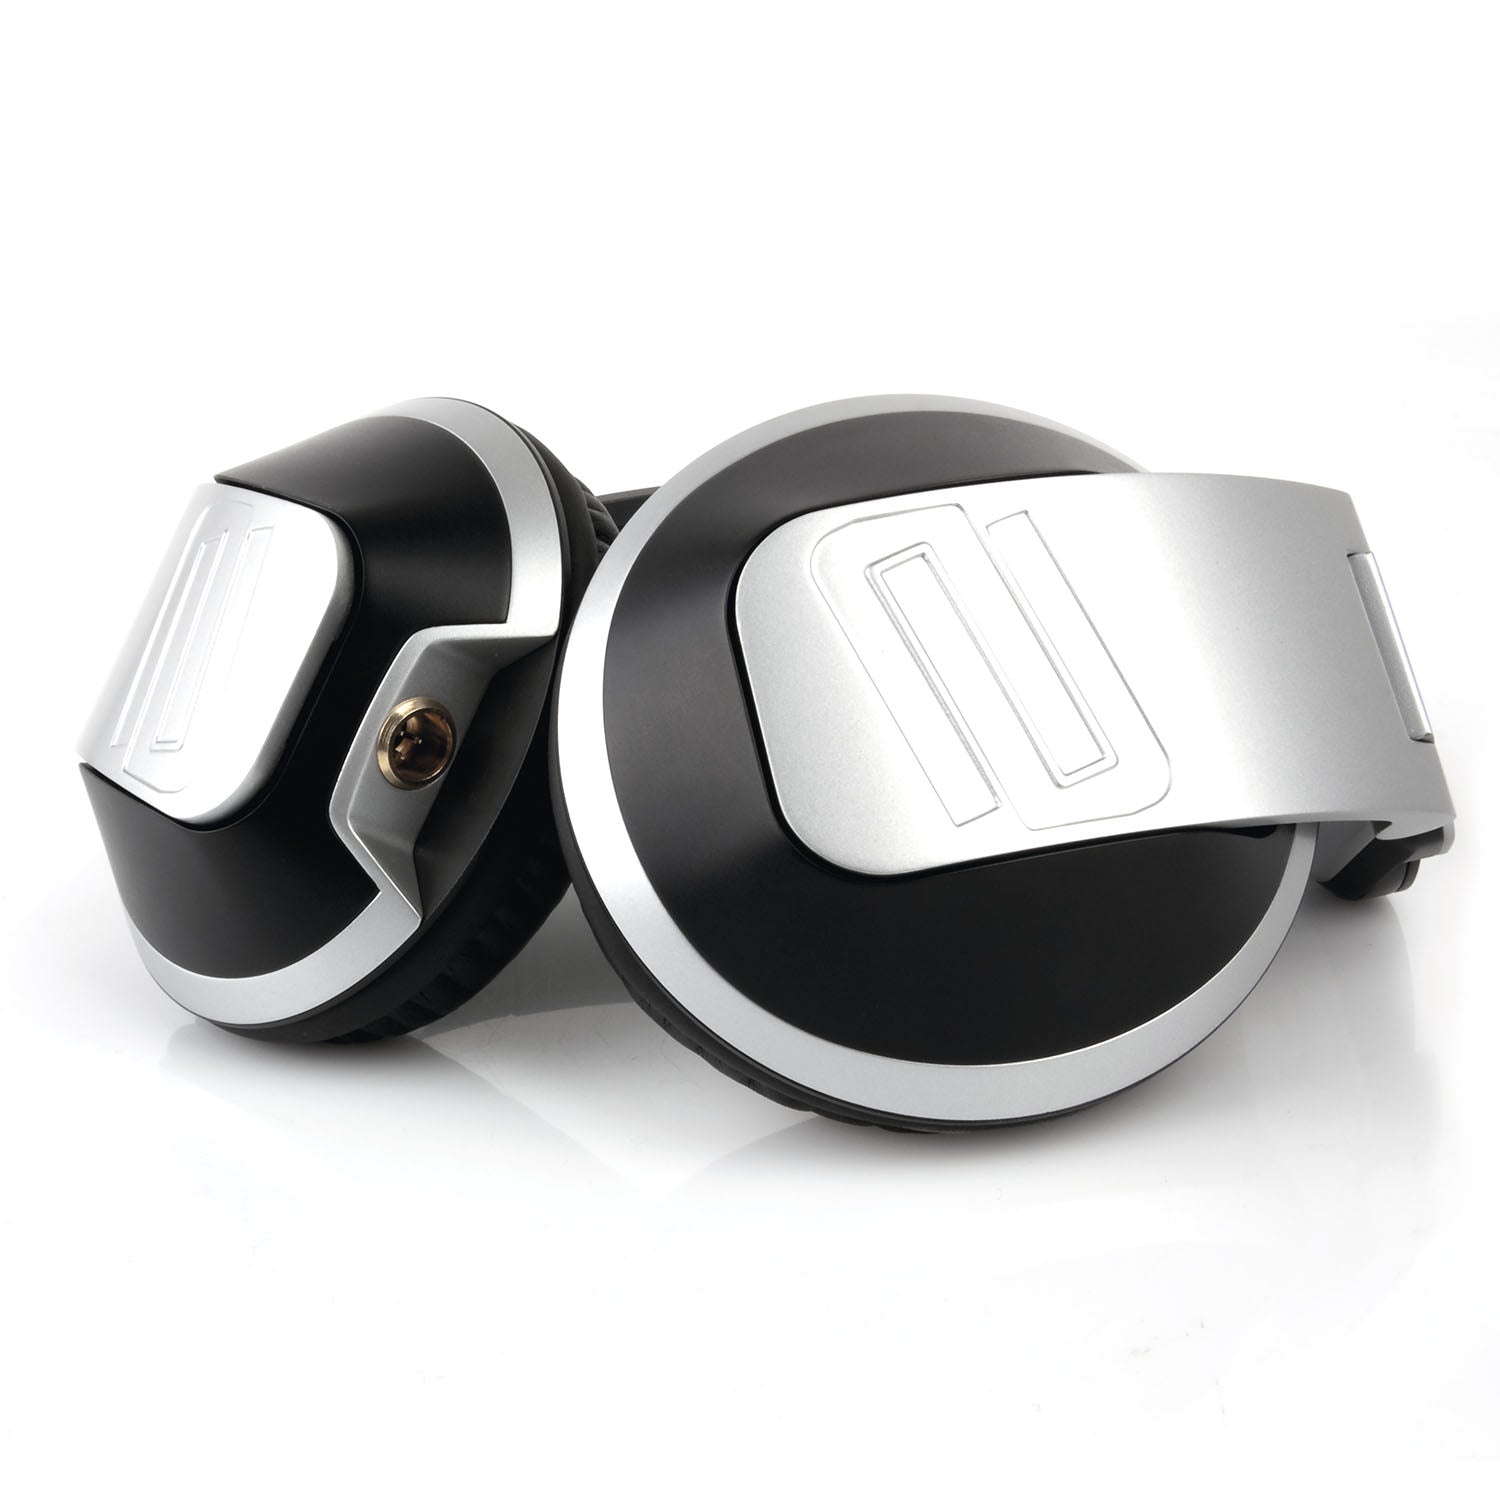 Reloop RHP-20 Professional Premium DJ And Studio Headphones - Hollywood DJ